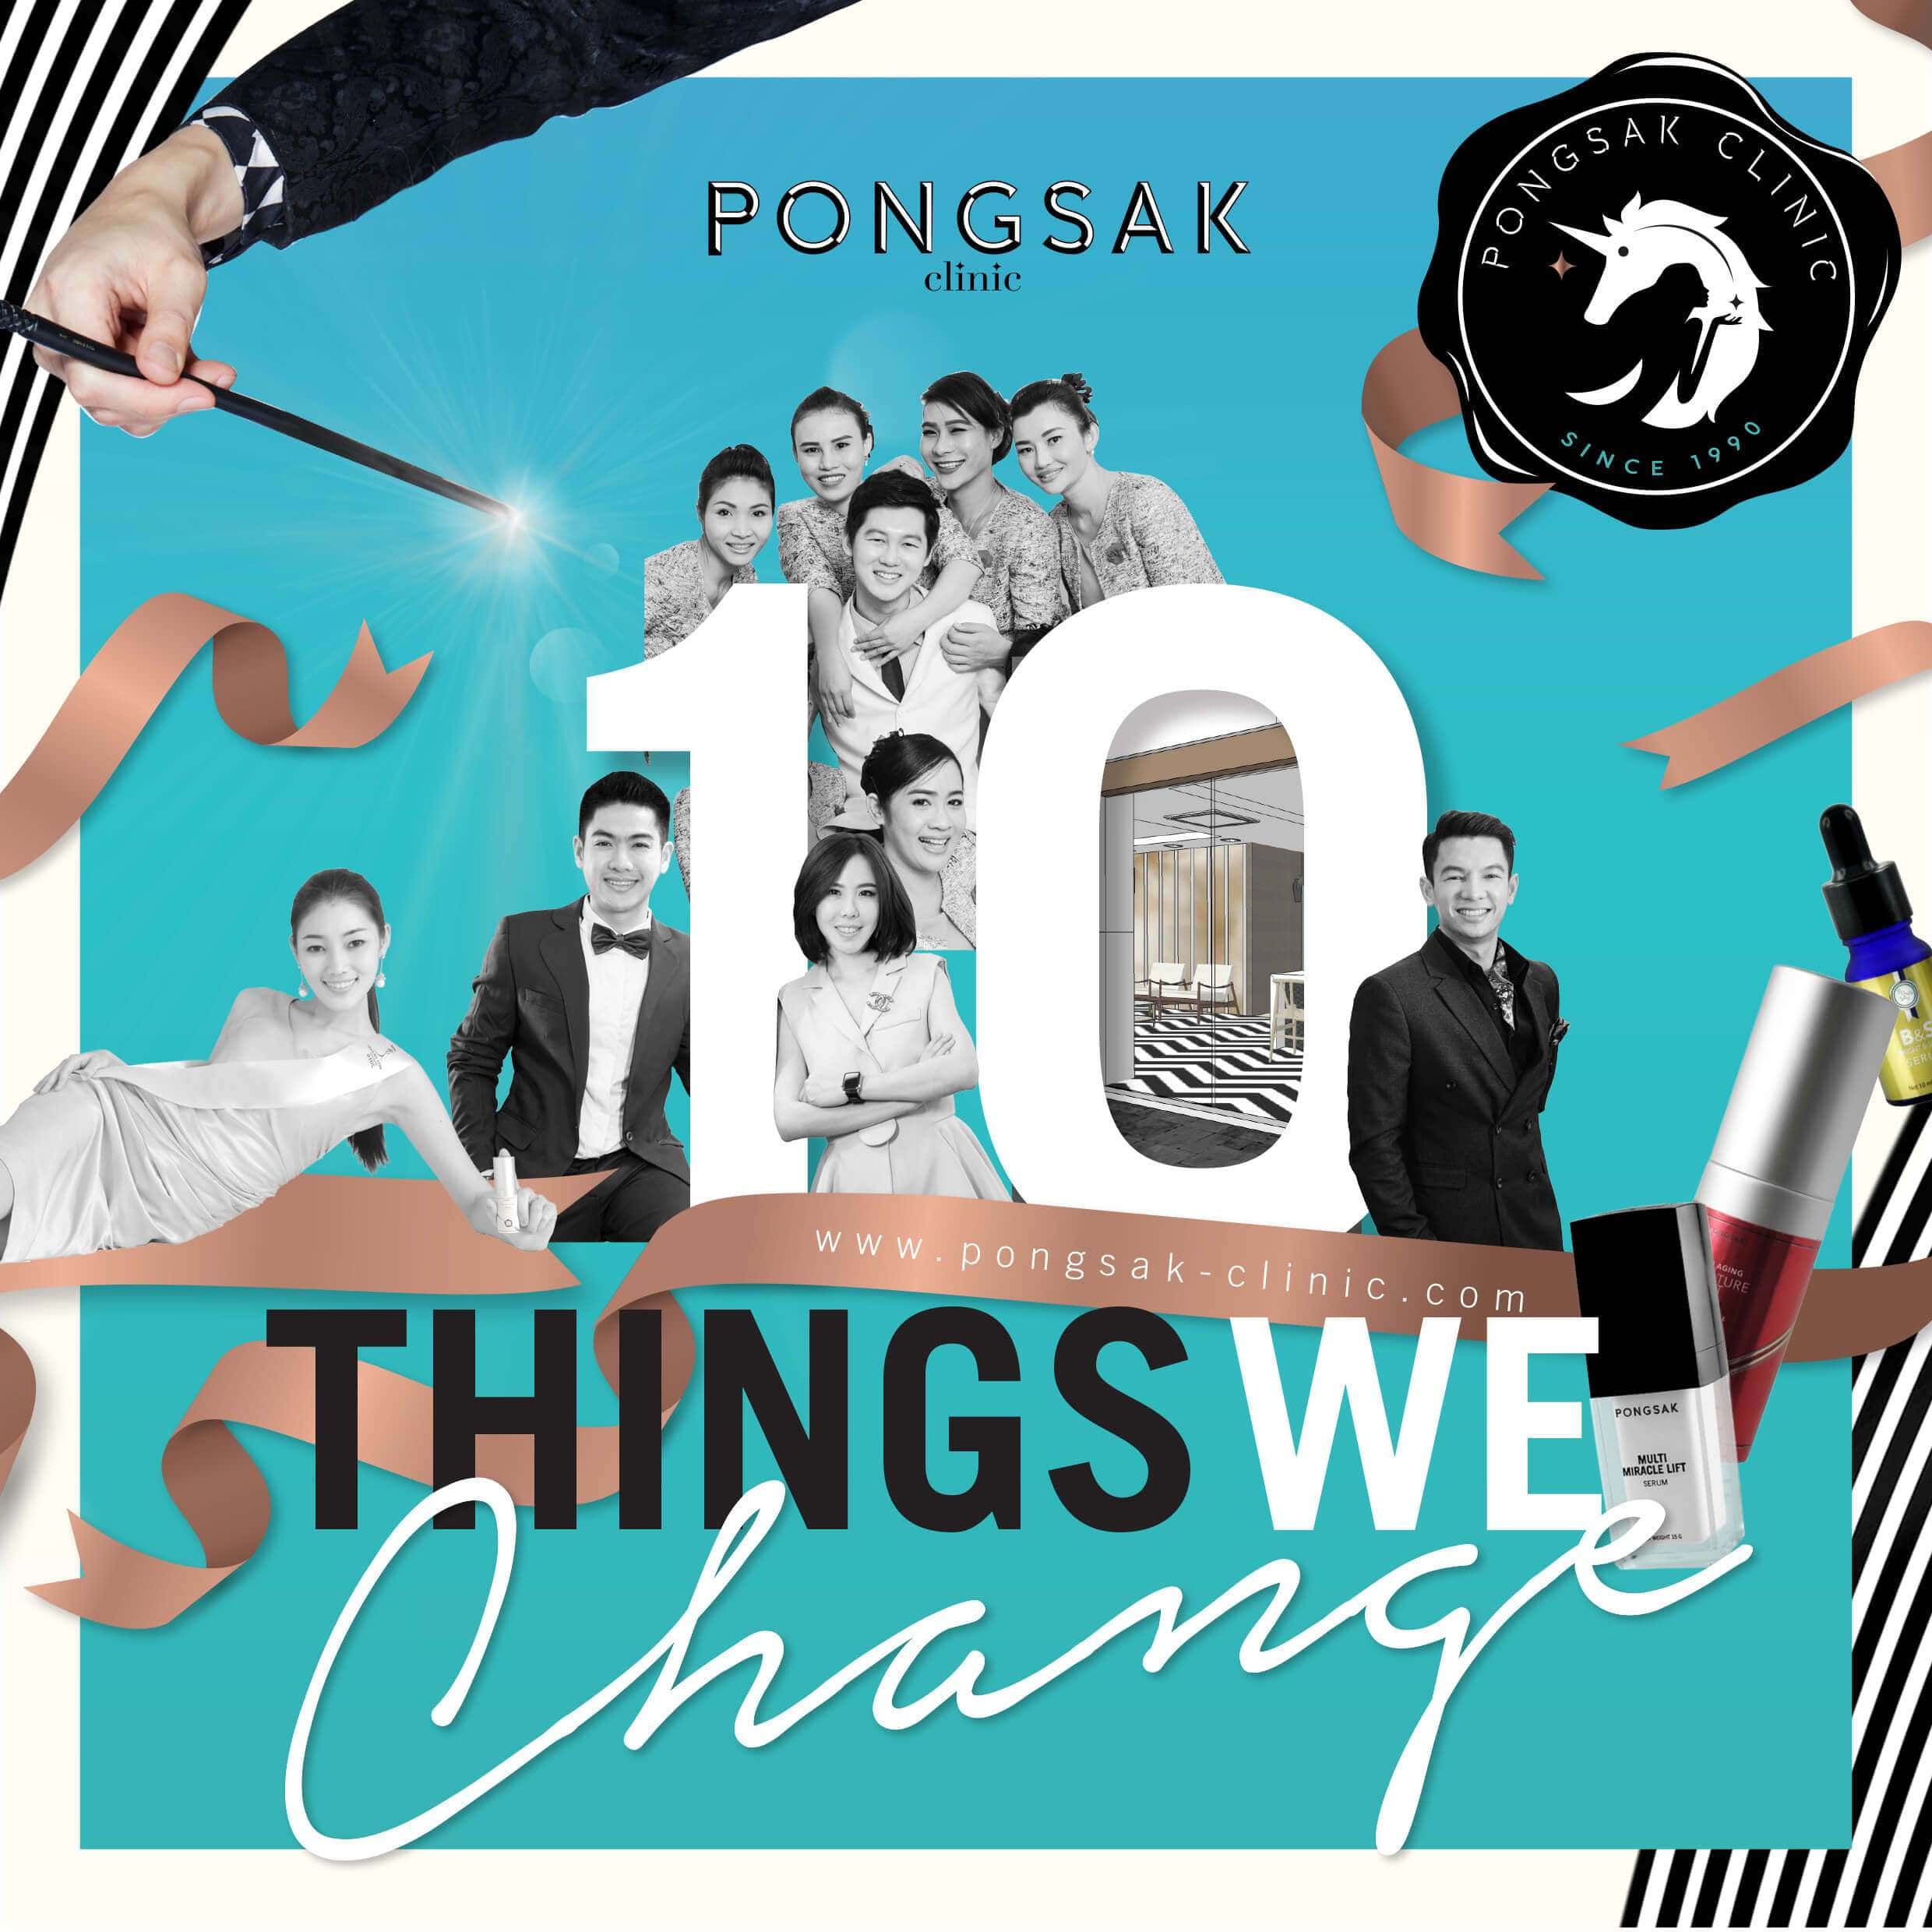 พงศ์ศักดิ์คลินิก, Pongsak Clinic, Pongsak Change, ร่วมเปลี่ยนไปกับเรา